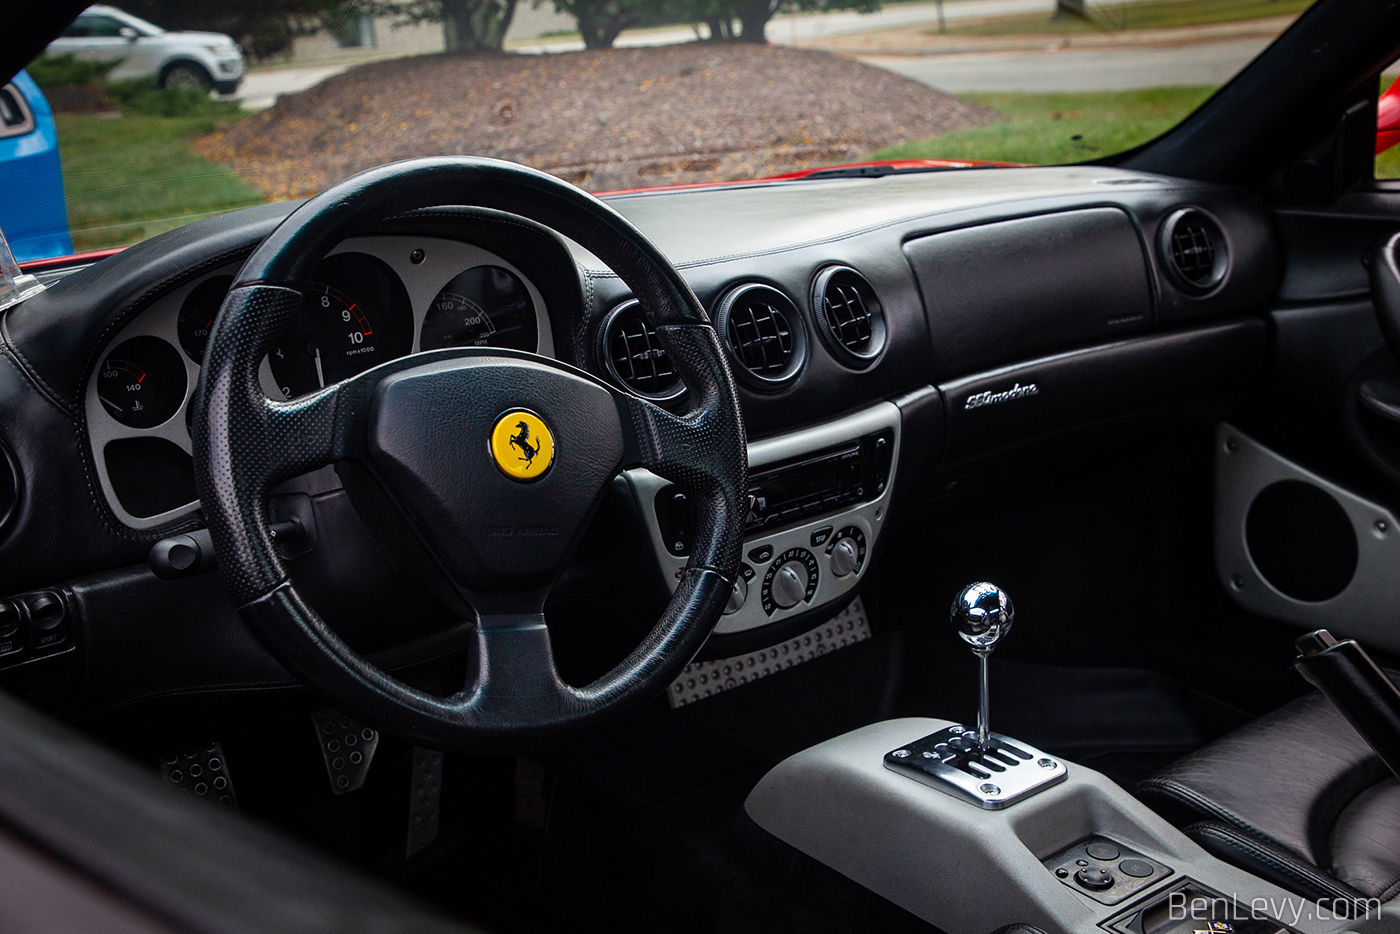 Dashboard of Ferrari 360 Modena with Black Interior